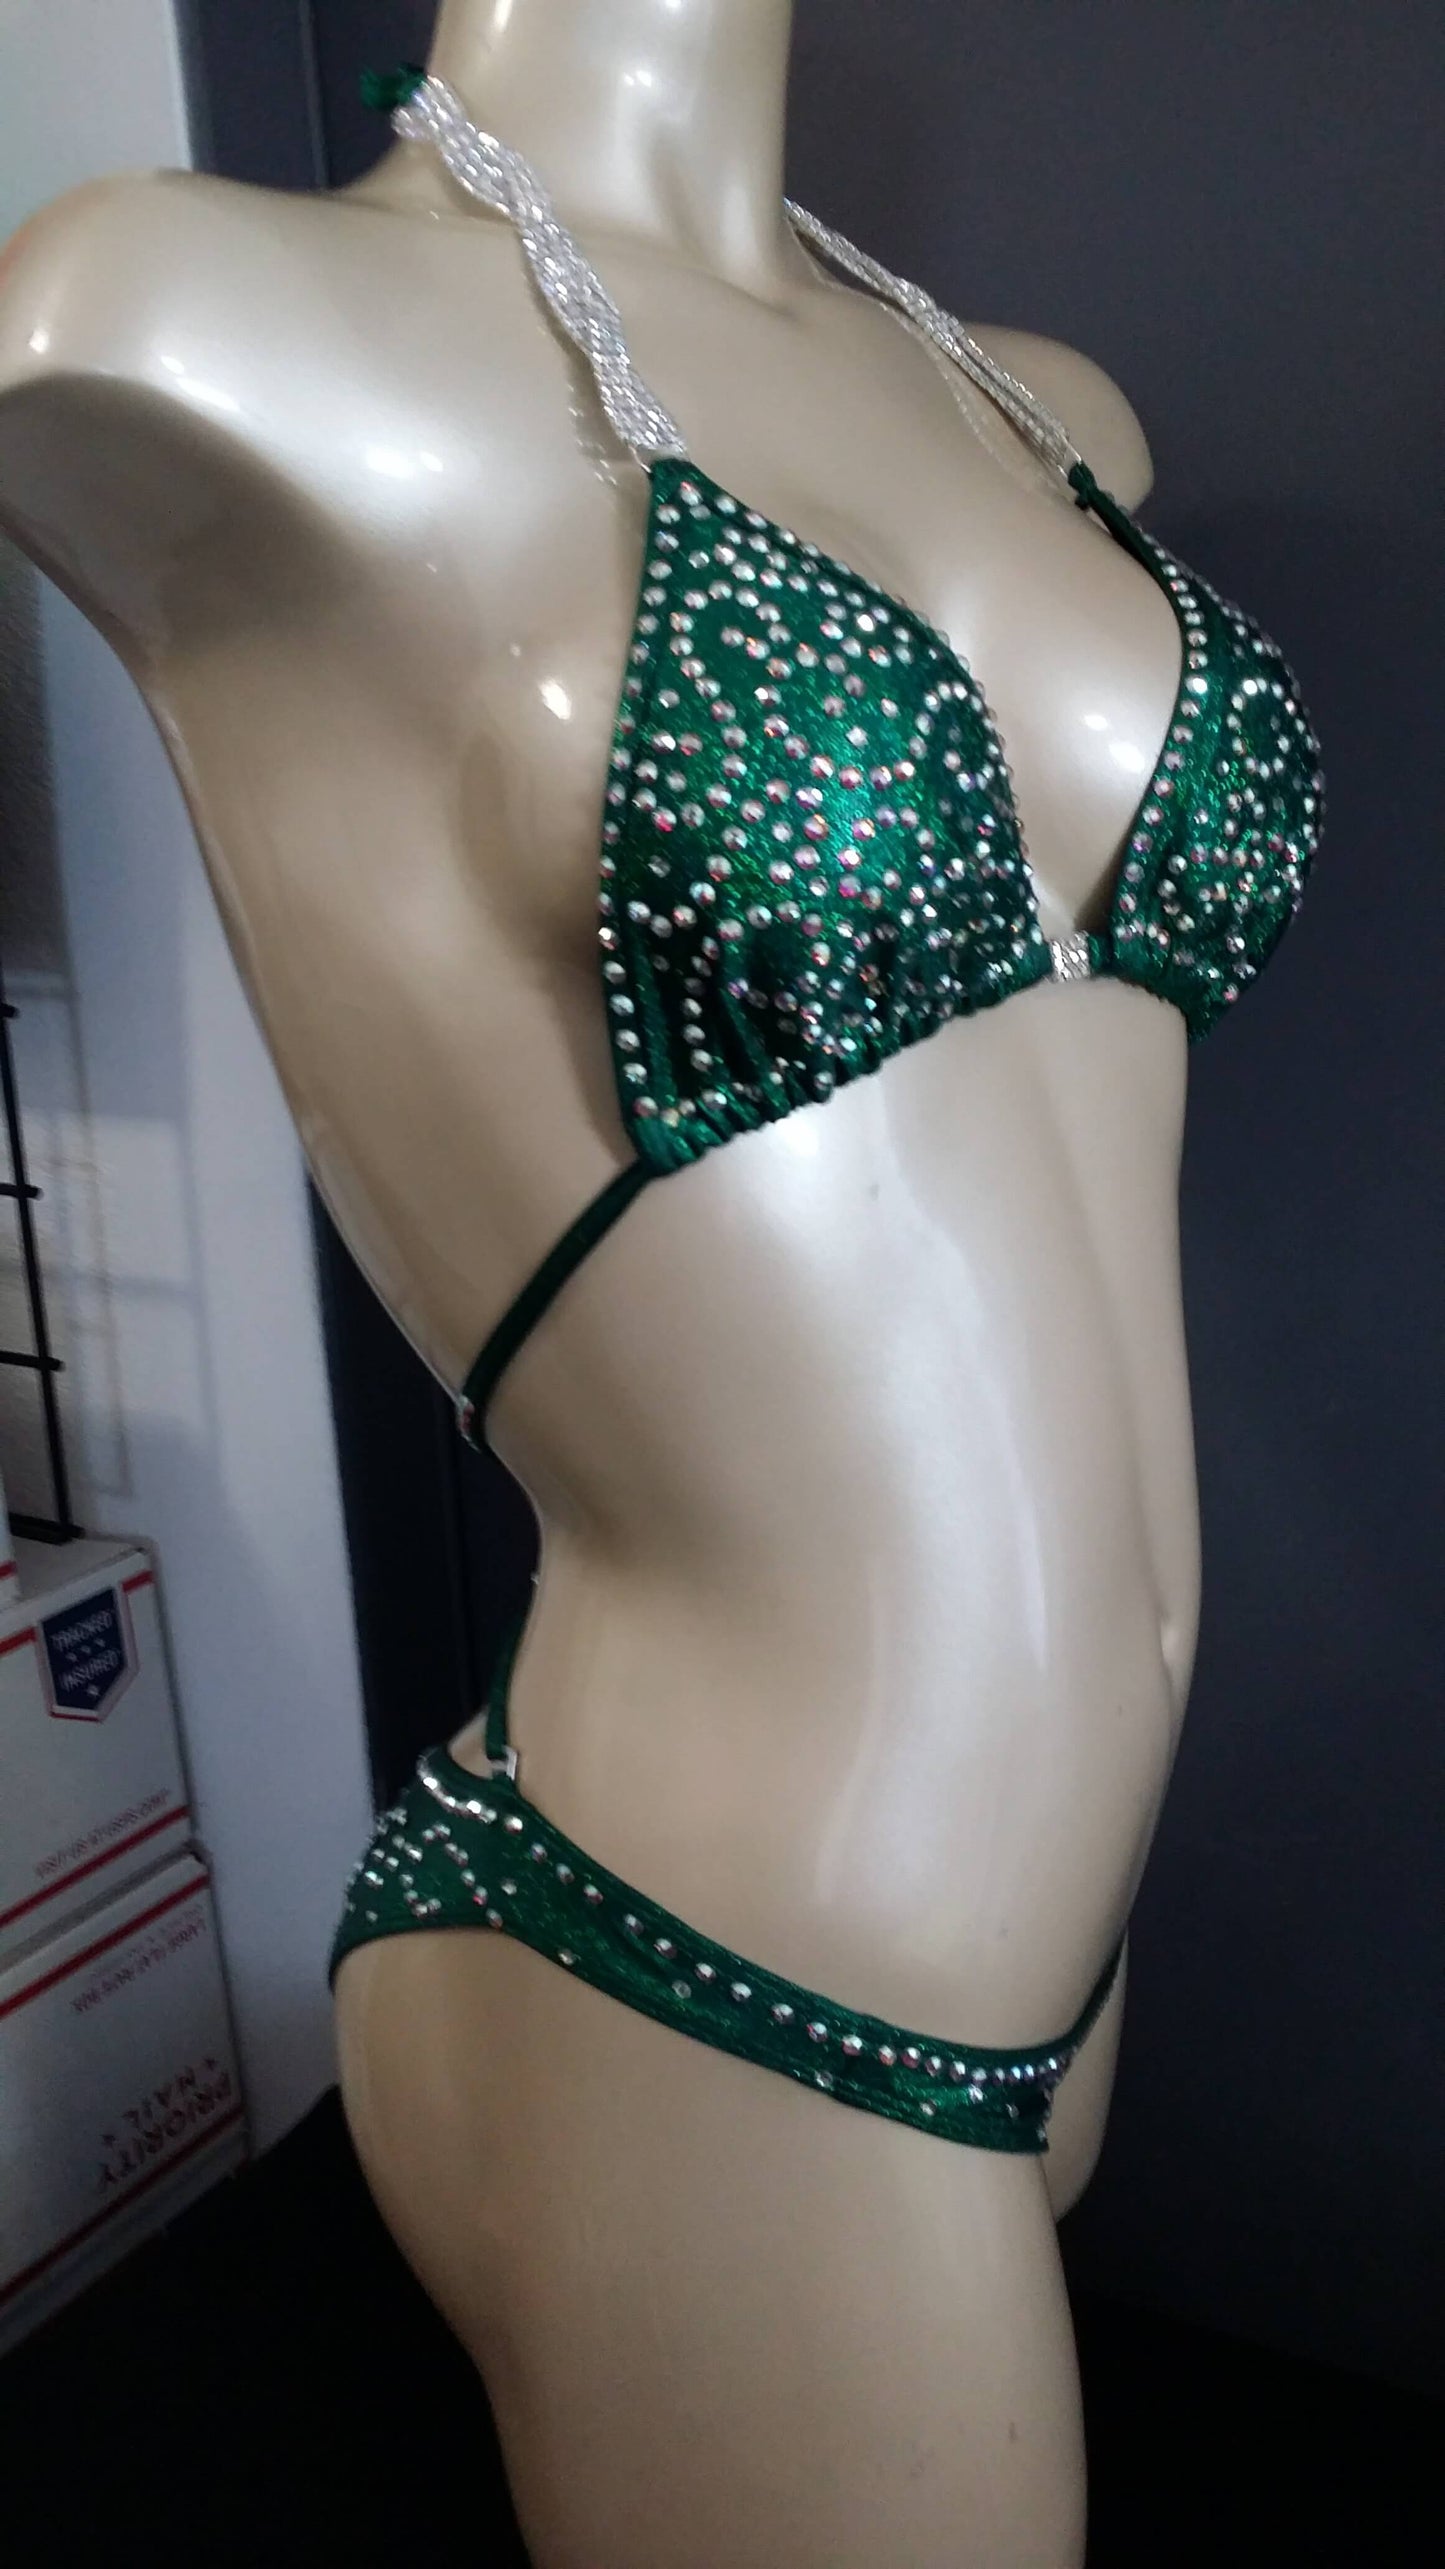 Emerald green figure suit bikini with AB swirl rhinestone design